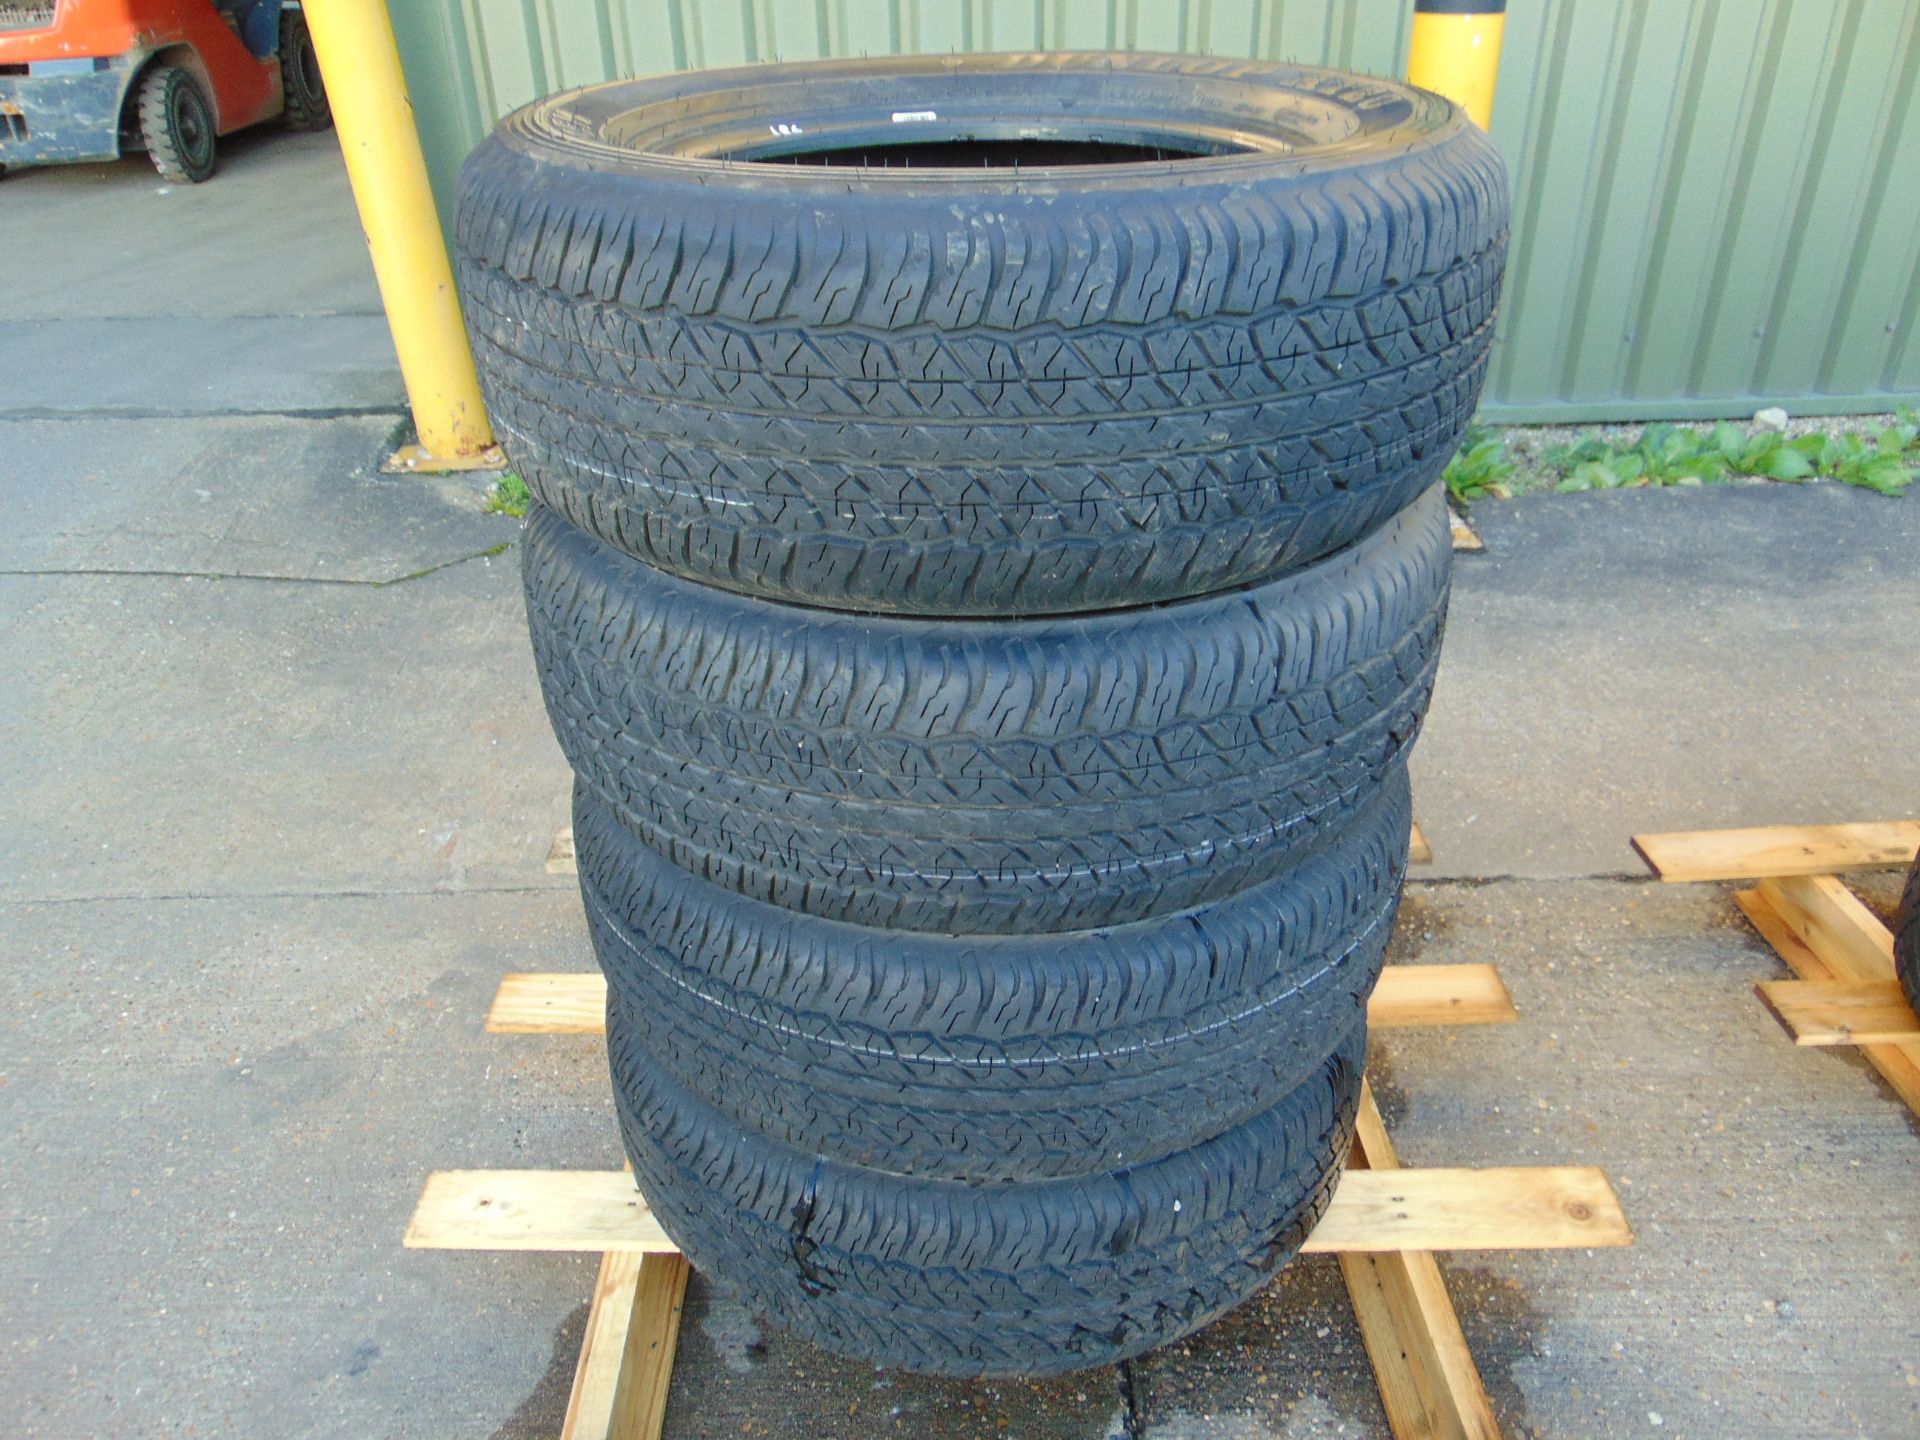 4 x Dunlop AT20 Grand Trek Tyres 265/60 R18 - Unused/Demounted - Image 2 of 6